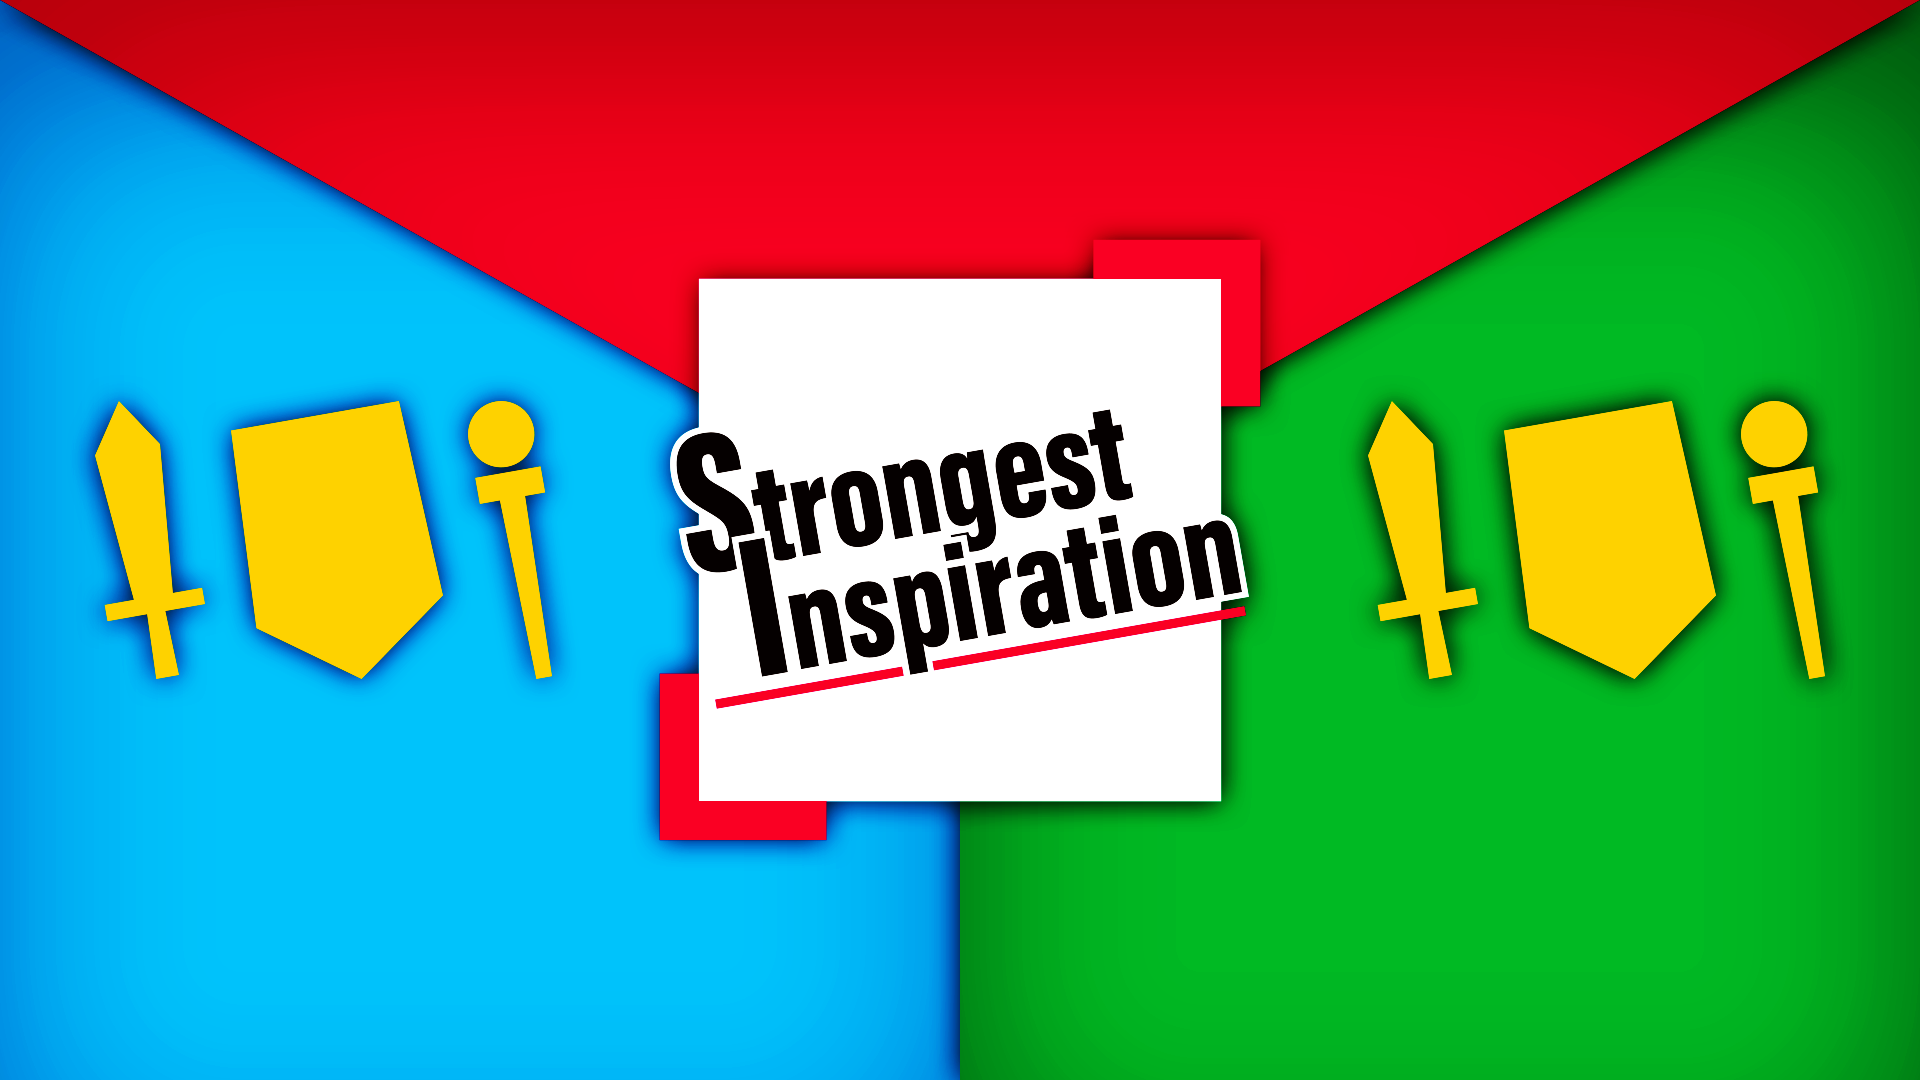 総合コンテンツサイト「竜平堂 (西野竜平)」の対戦カードゲーム「Strongest Inspiration」のバナー画像